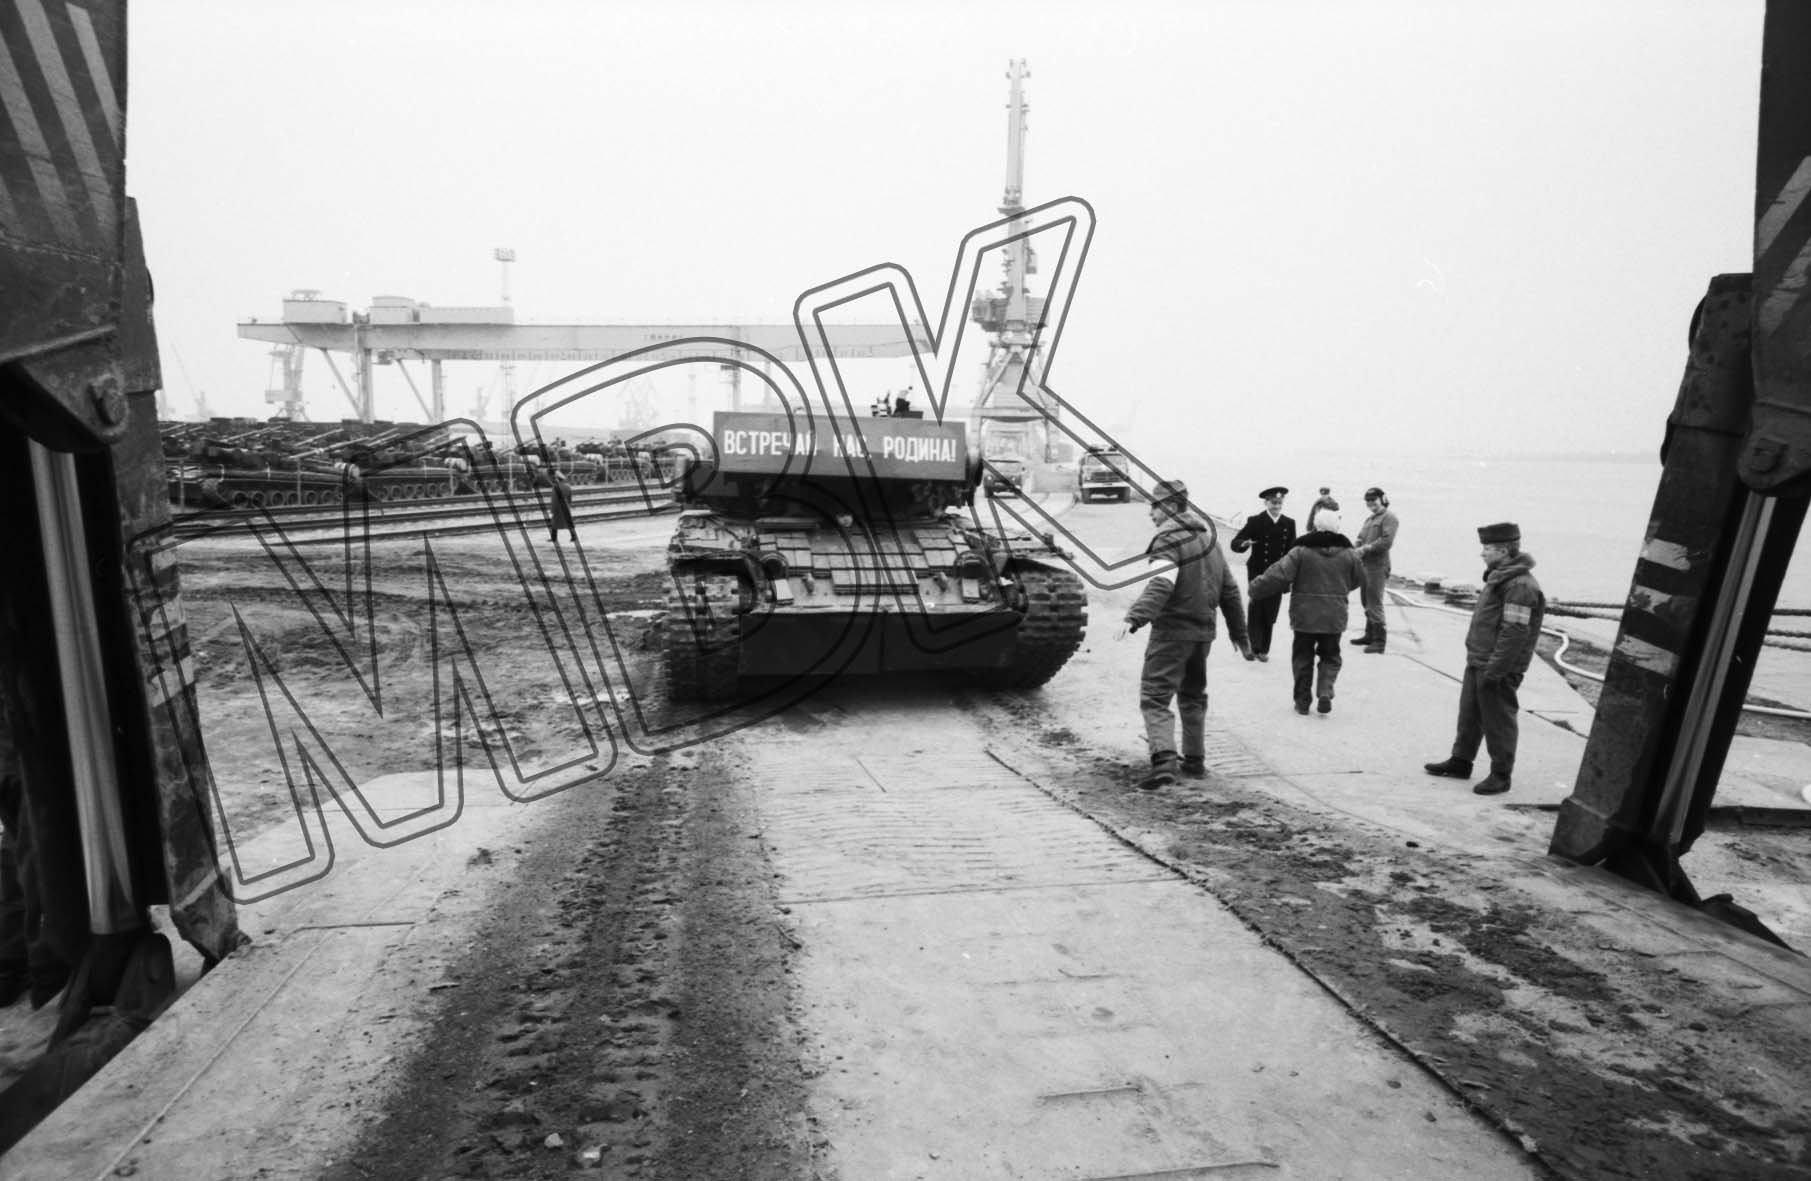 Fotografie: Panzer fährt in den Laderaum des Fährschiffes, Rostocker Hafen, 27. März 1992 (Museum Berlin-Karlshorst RR-P)